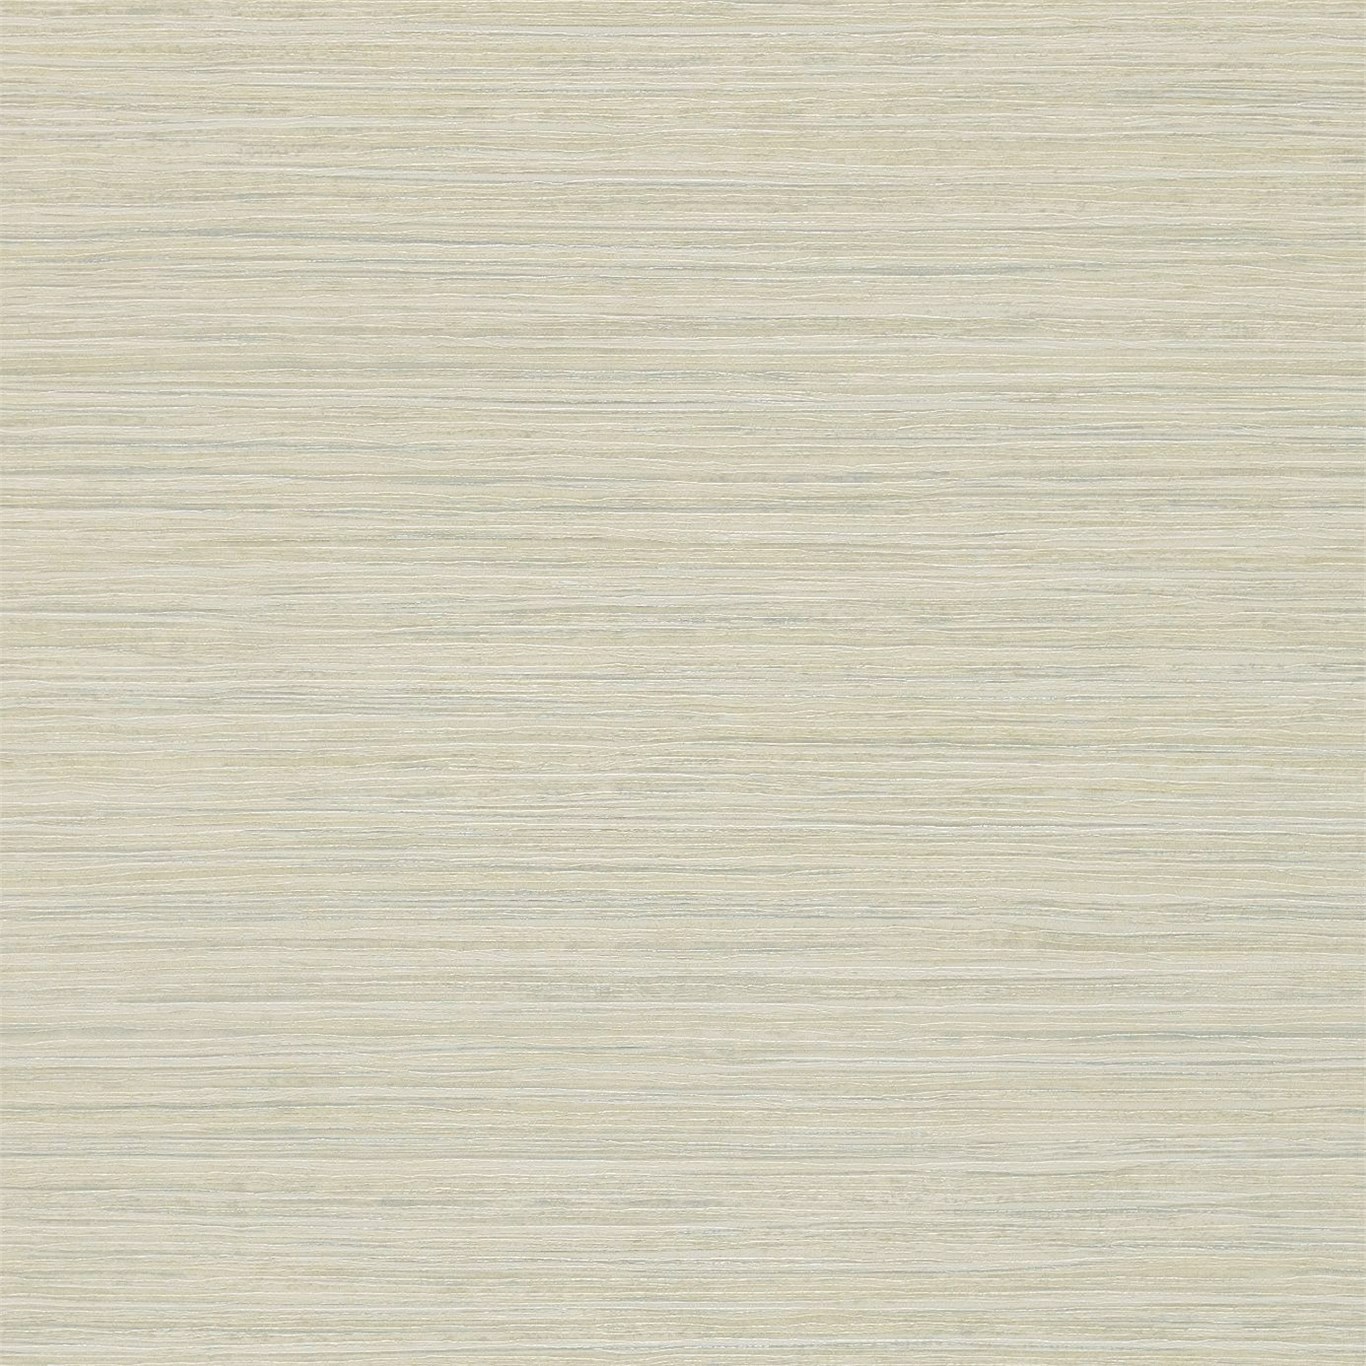 Oralia White Multi Wallpaper by HAR